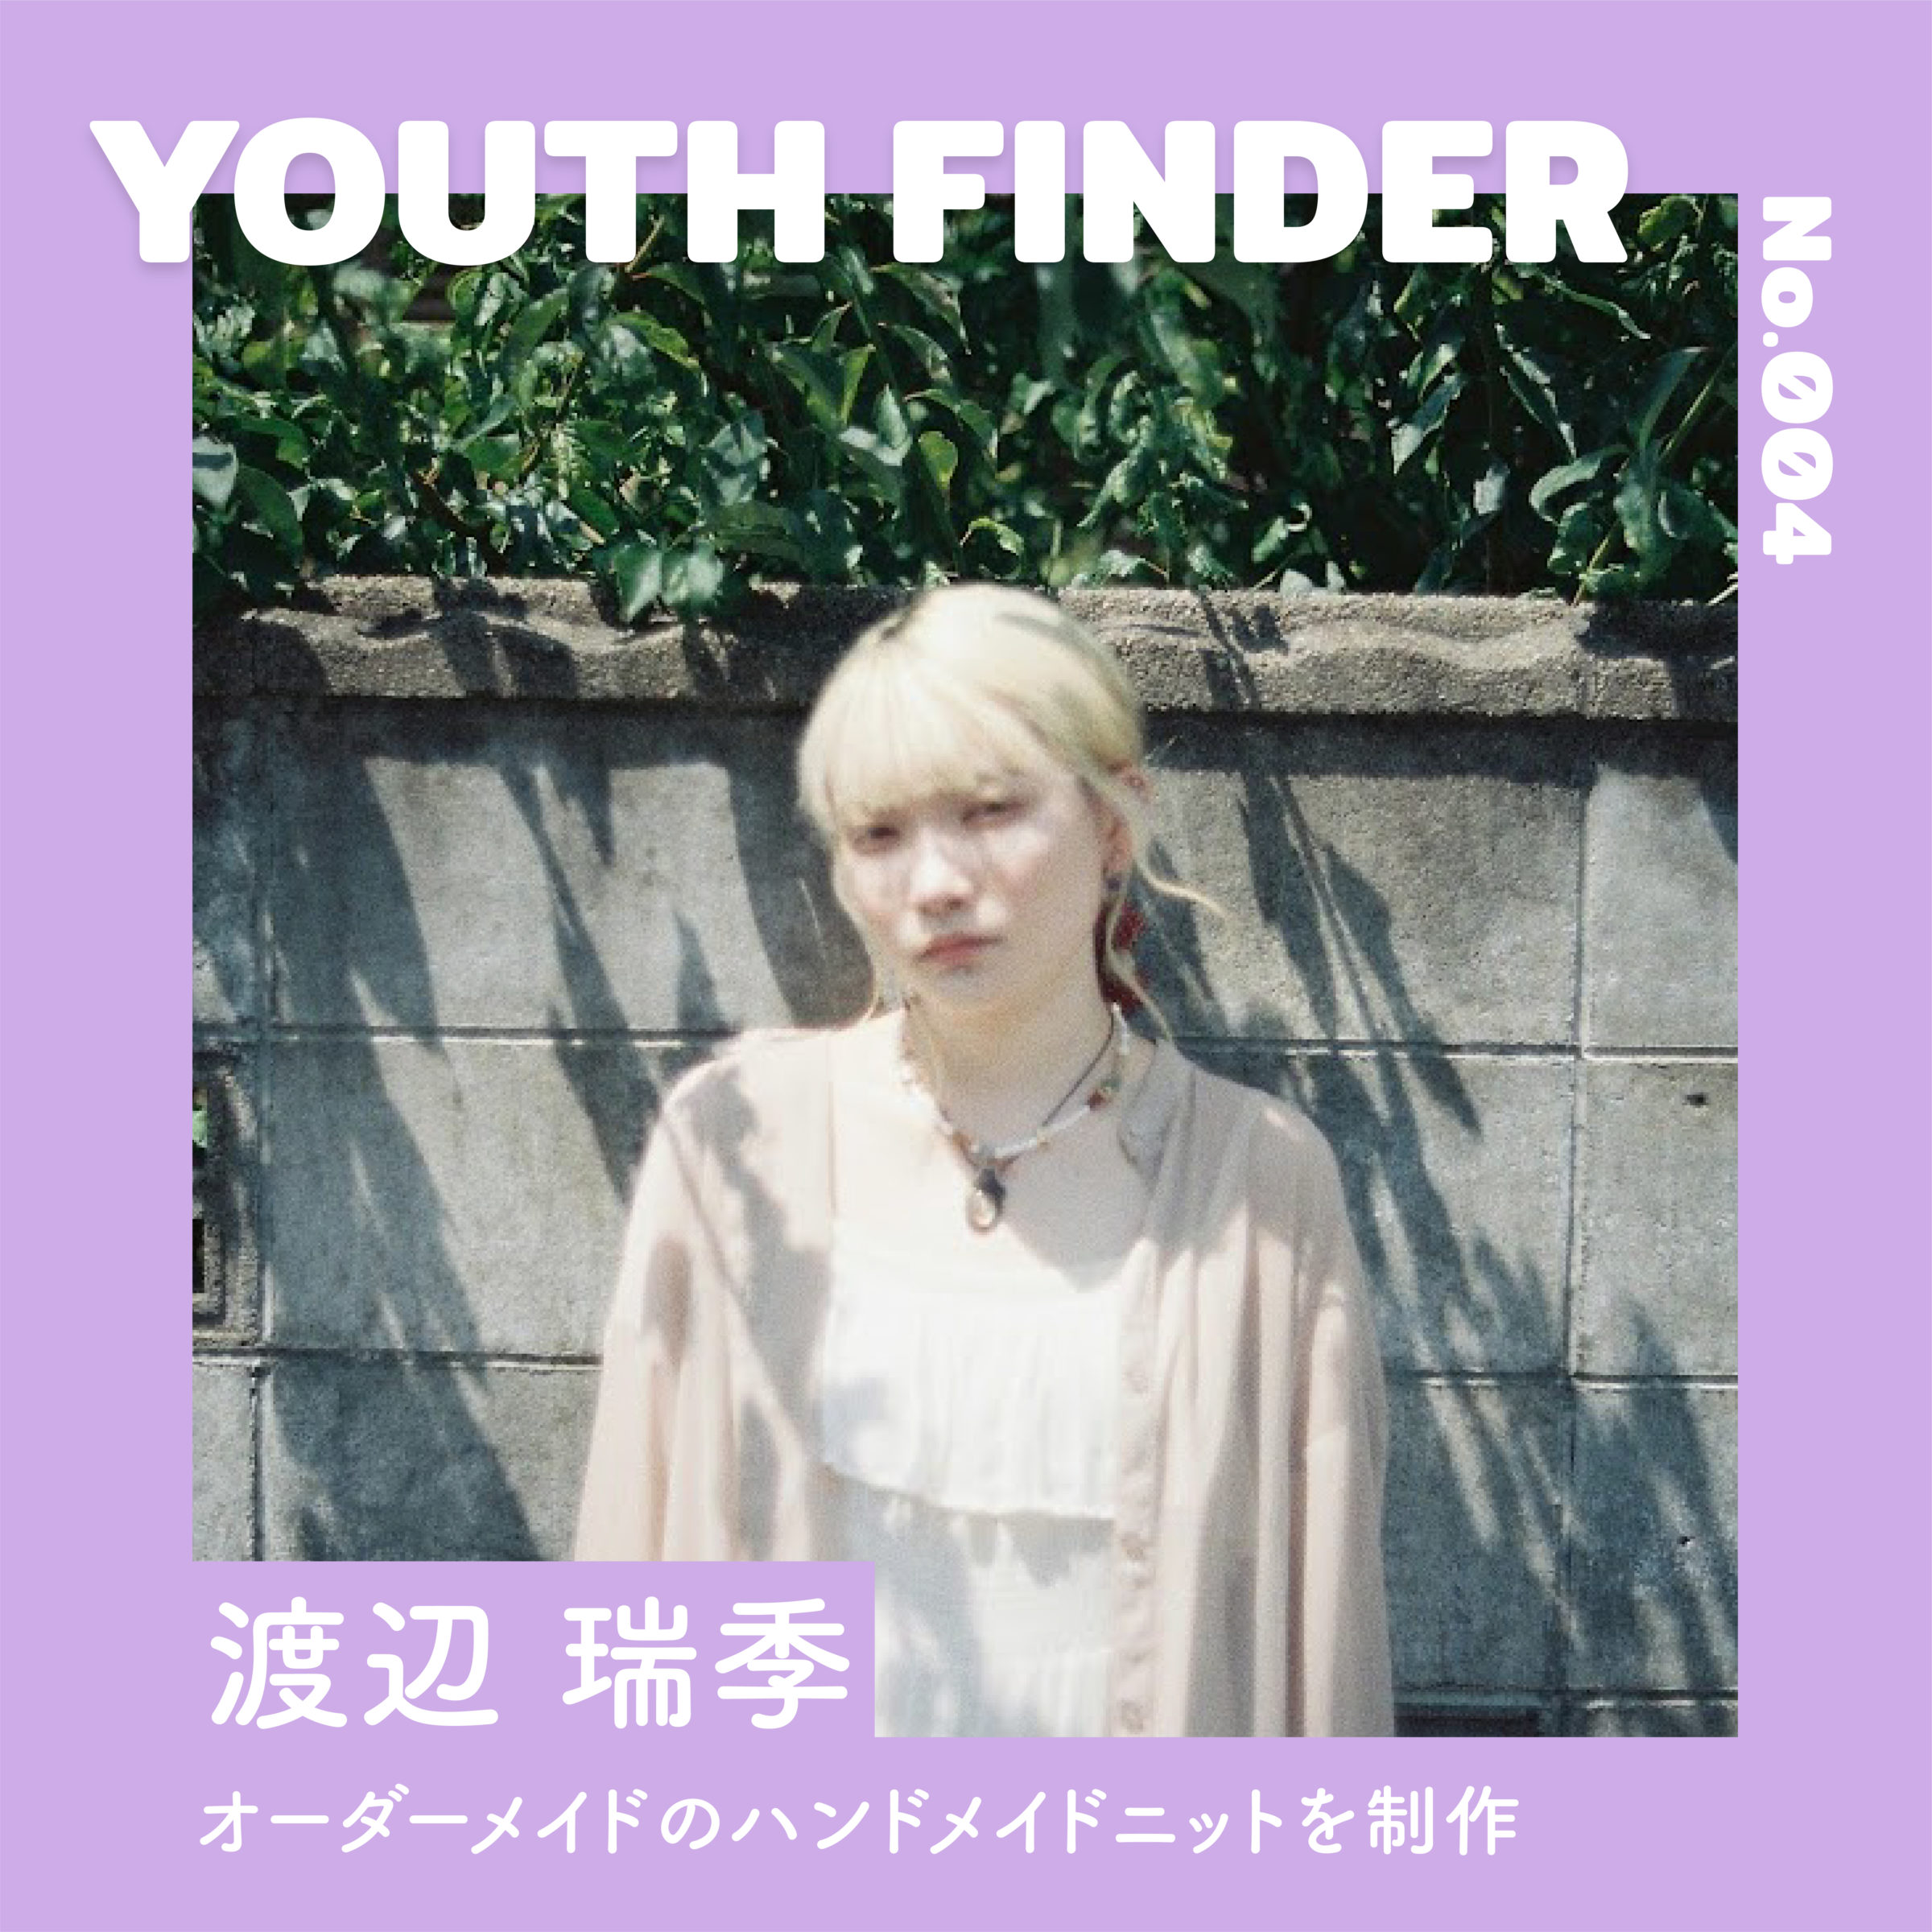 二ットを通じてファッションの楽しさを伝える　渡辺 瑞季さん【Youth Finder】のサムネイル